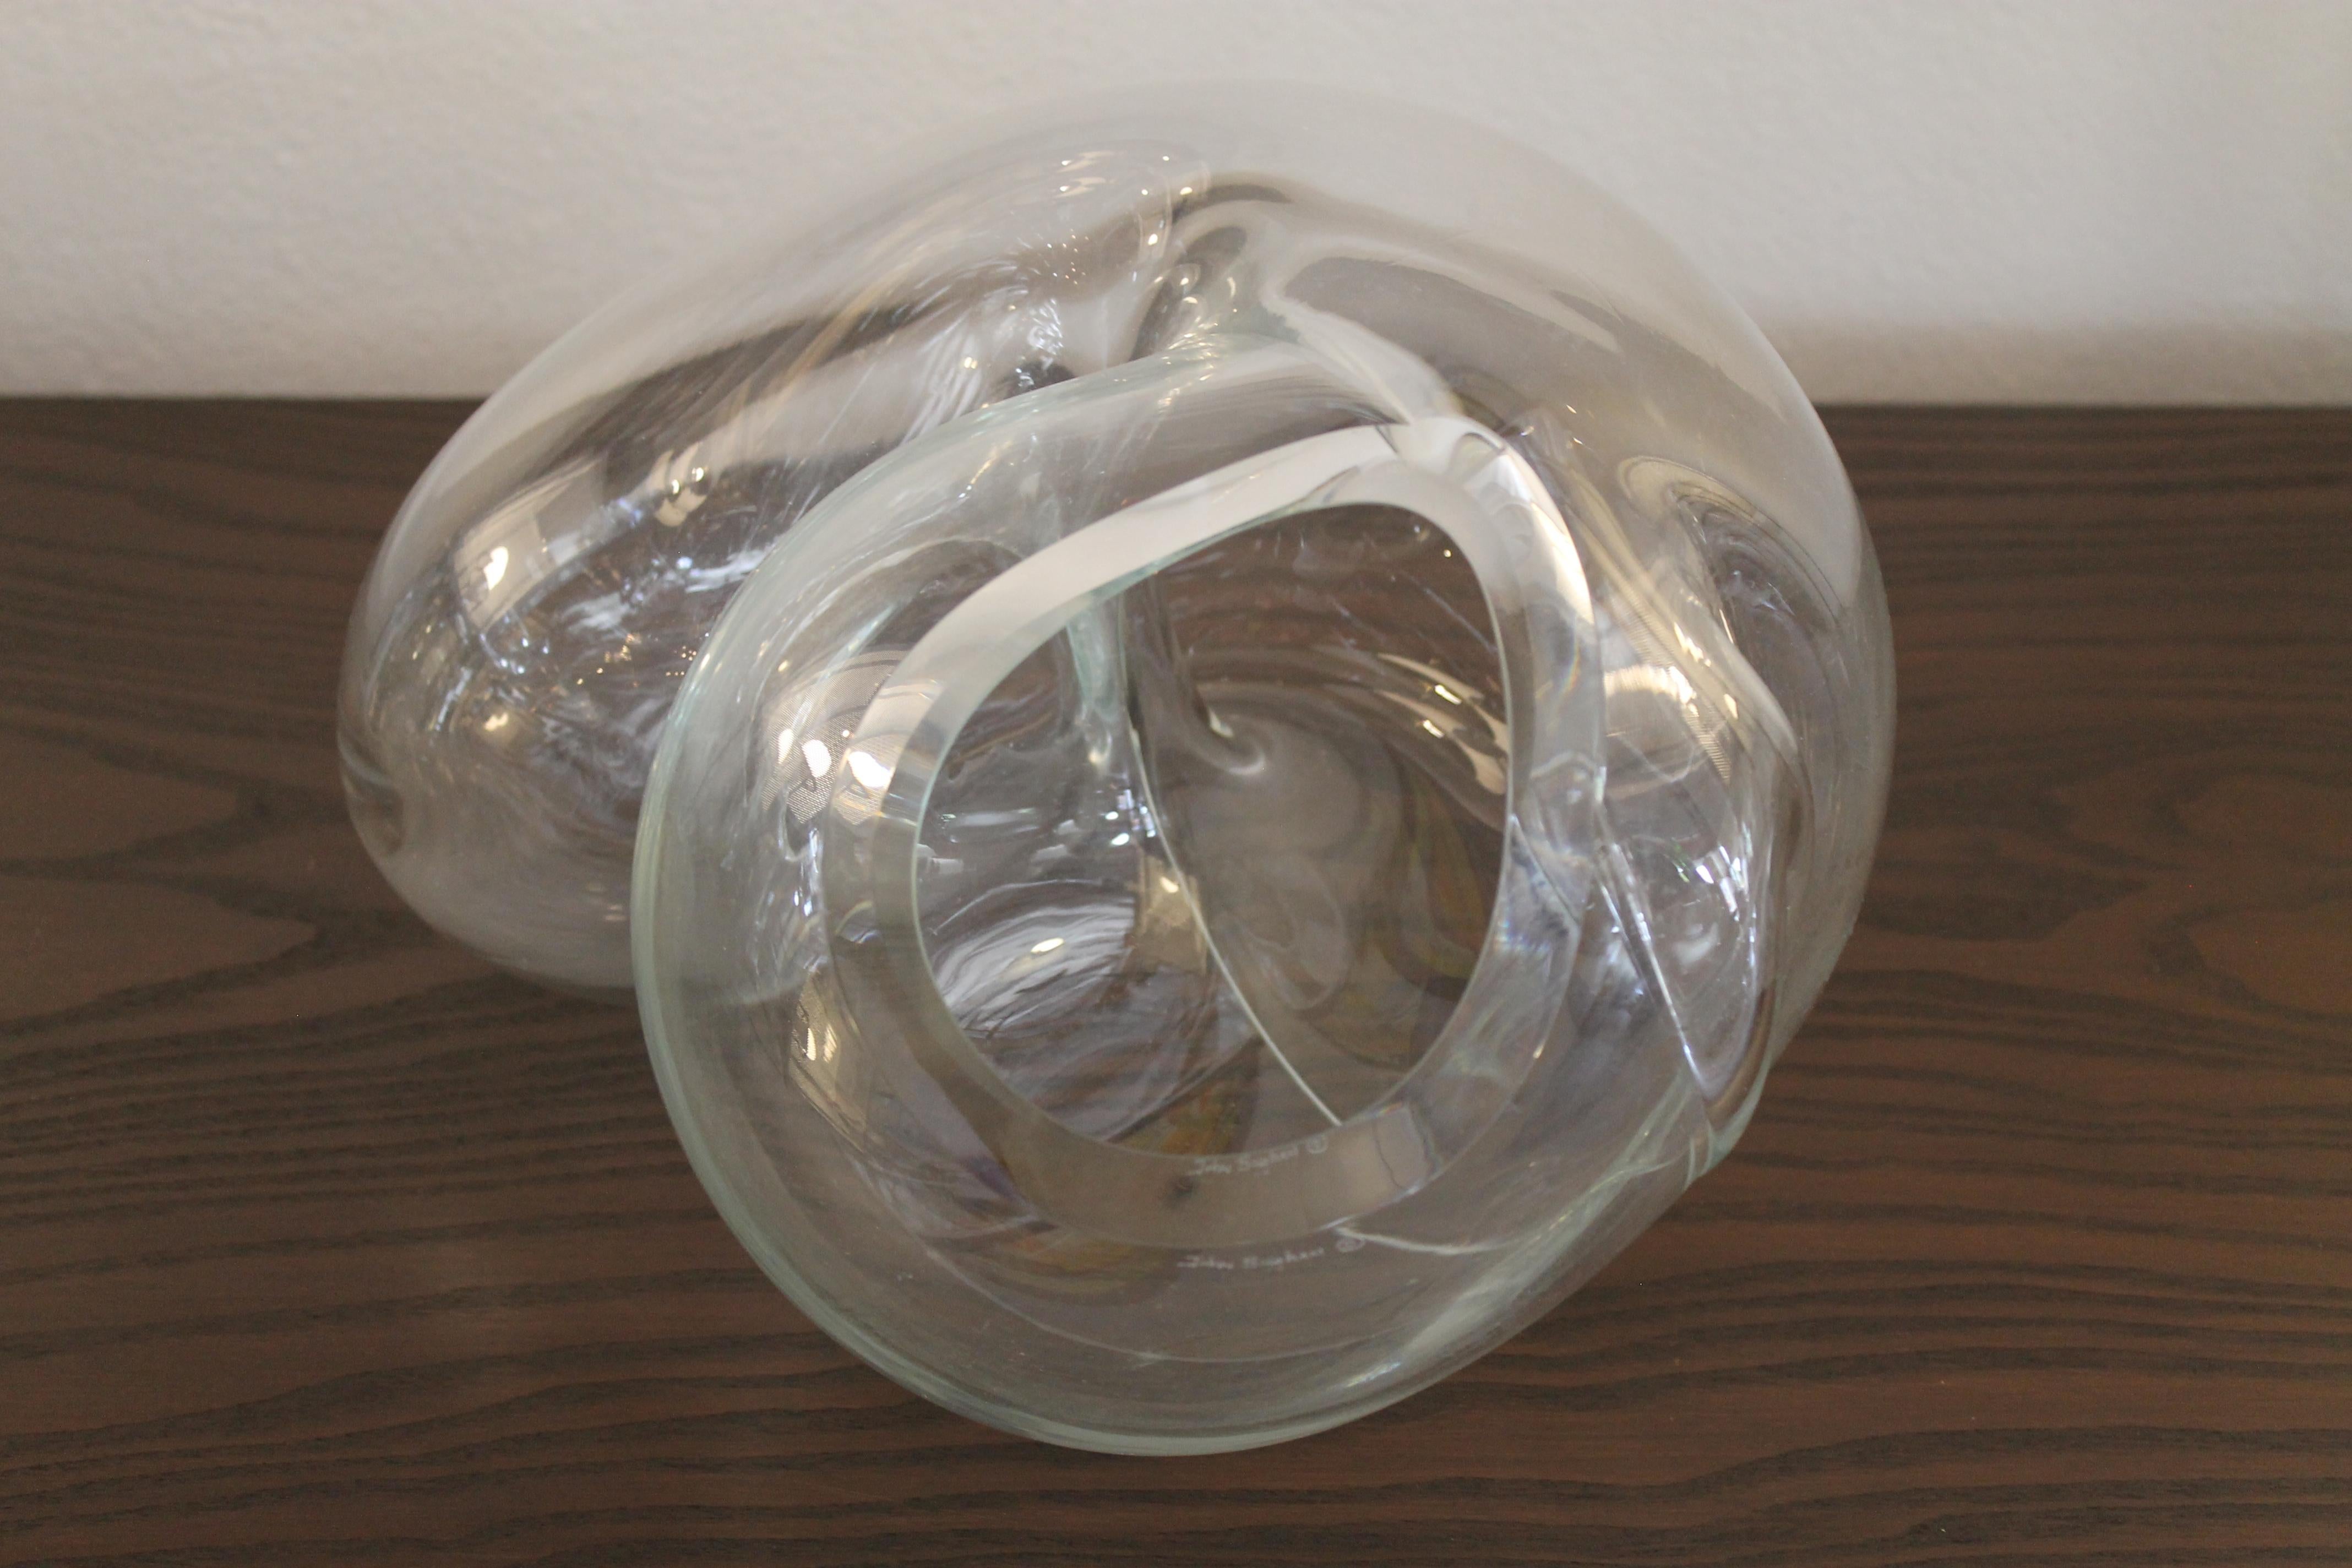 Four John Bingham Handblown Glass Sculptures 2